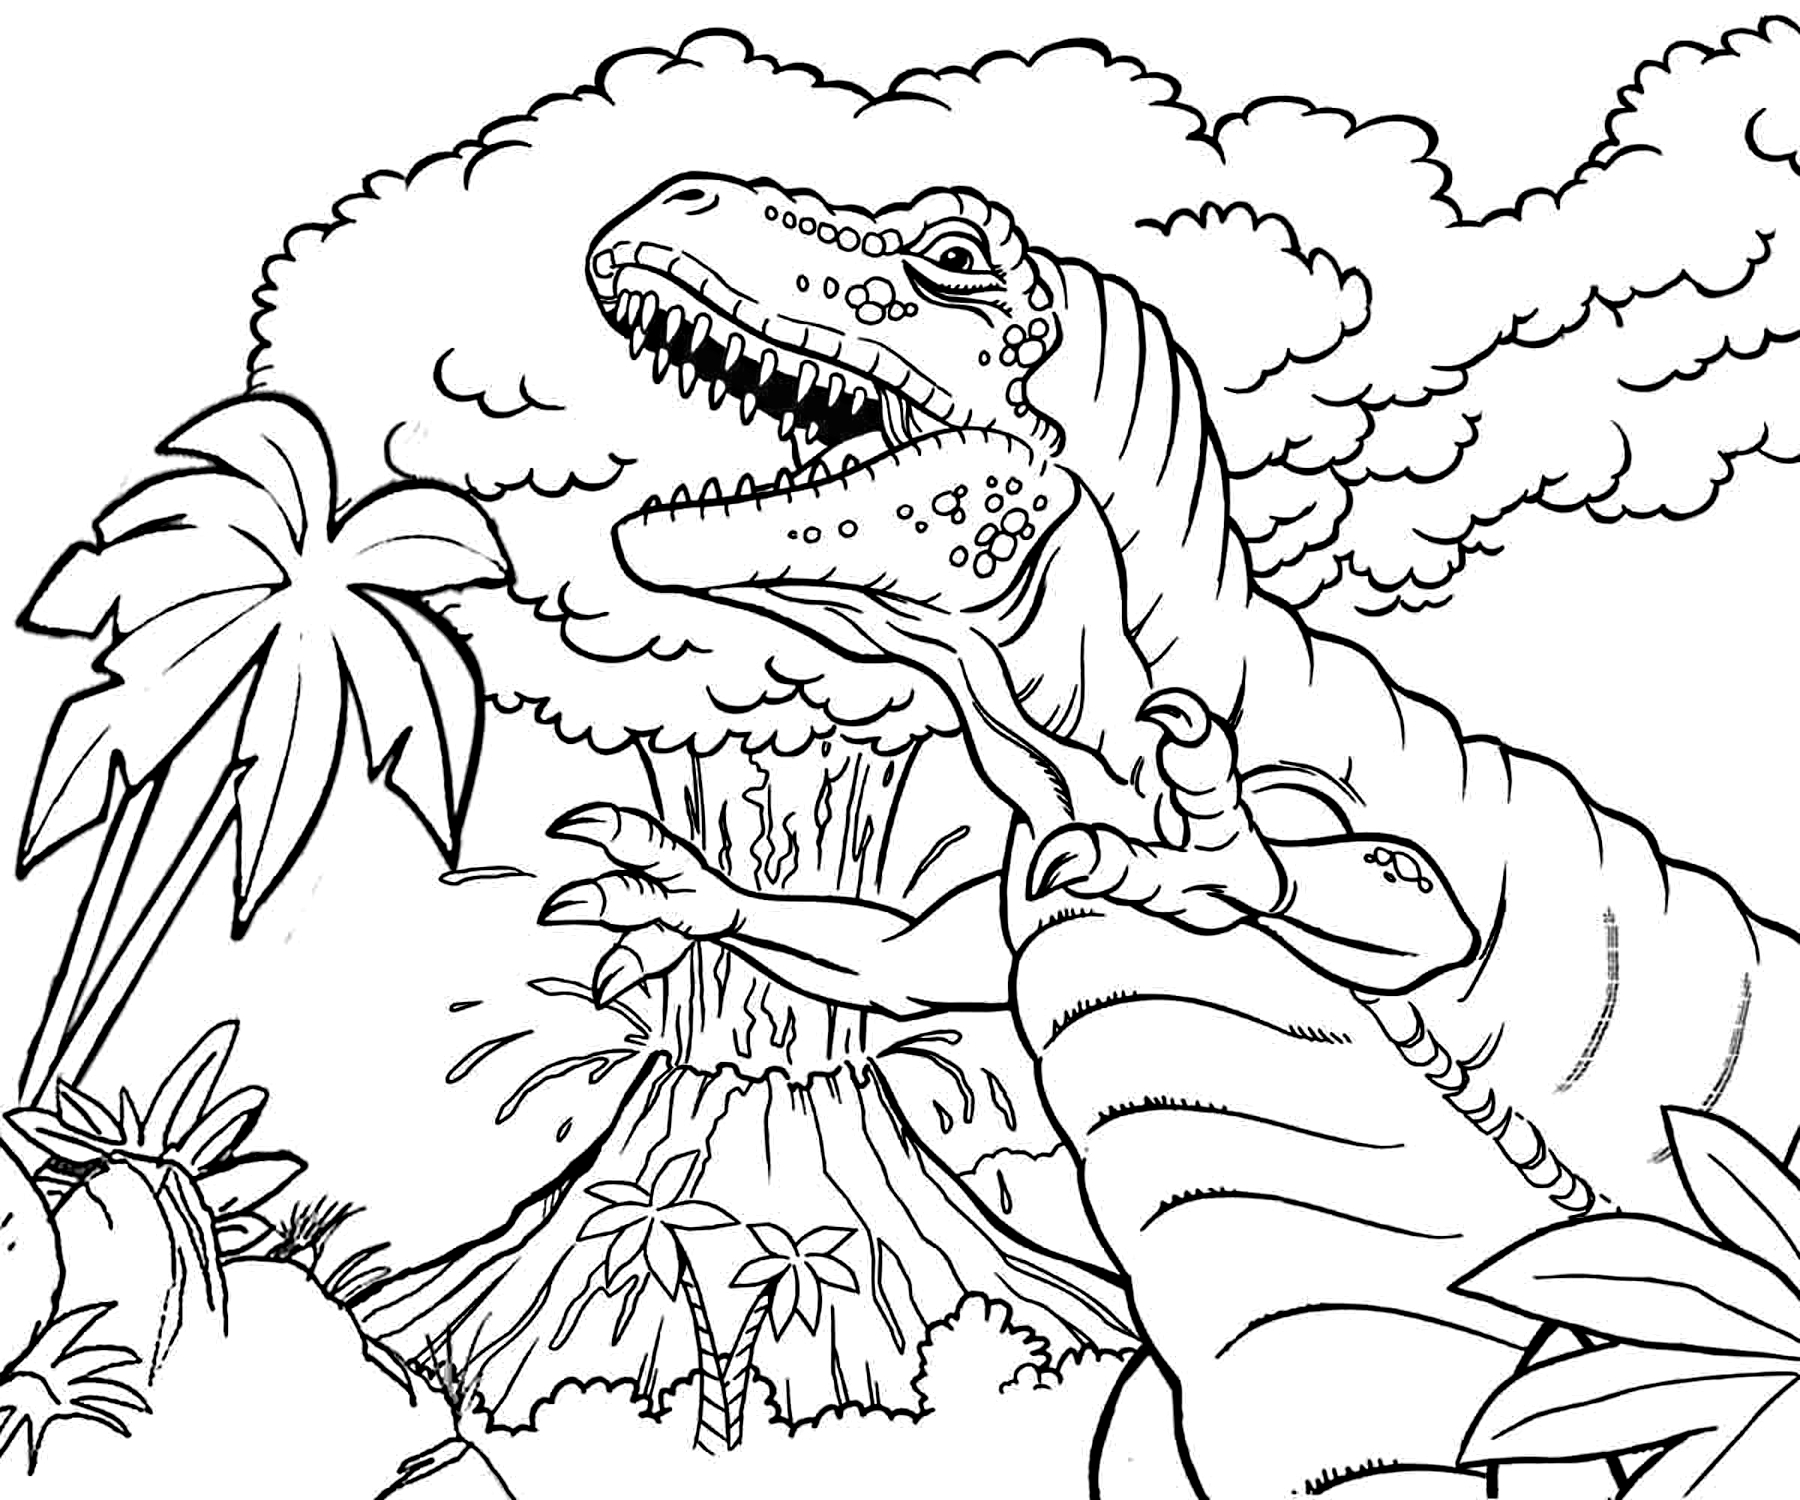 Раскраска динозавр формат а4. Тирекс раскраска парк Юрского периода. Раскраска динозавры мир Юрского периода. Динозавры / раскраска. Раскраски для мальчиков динозавры.